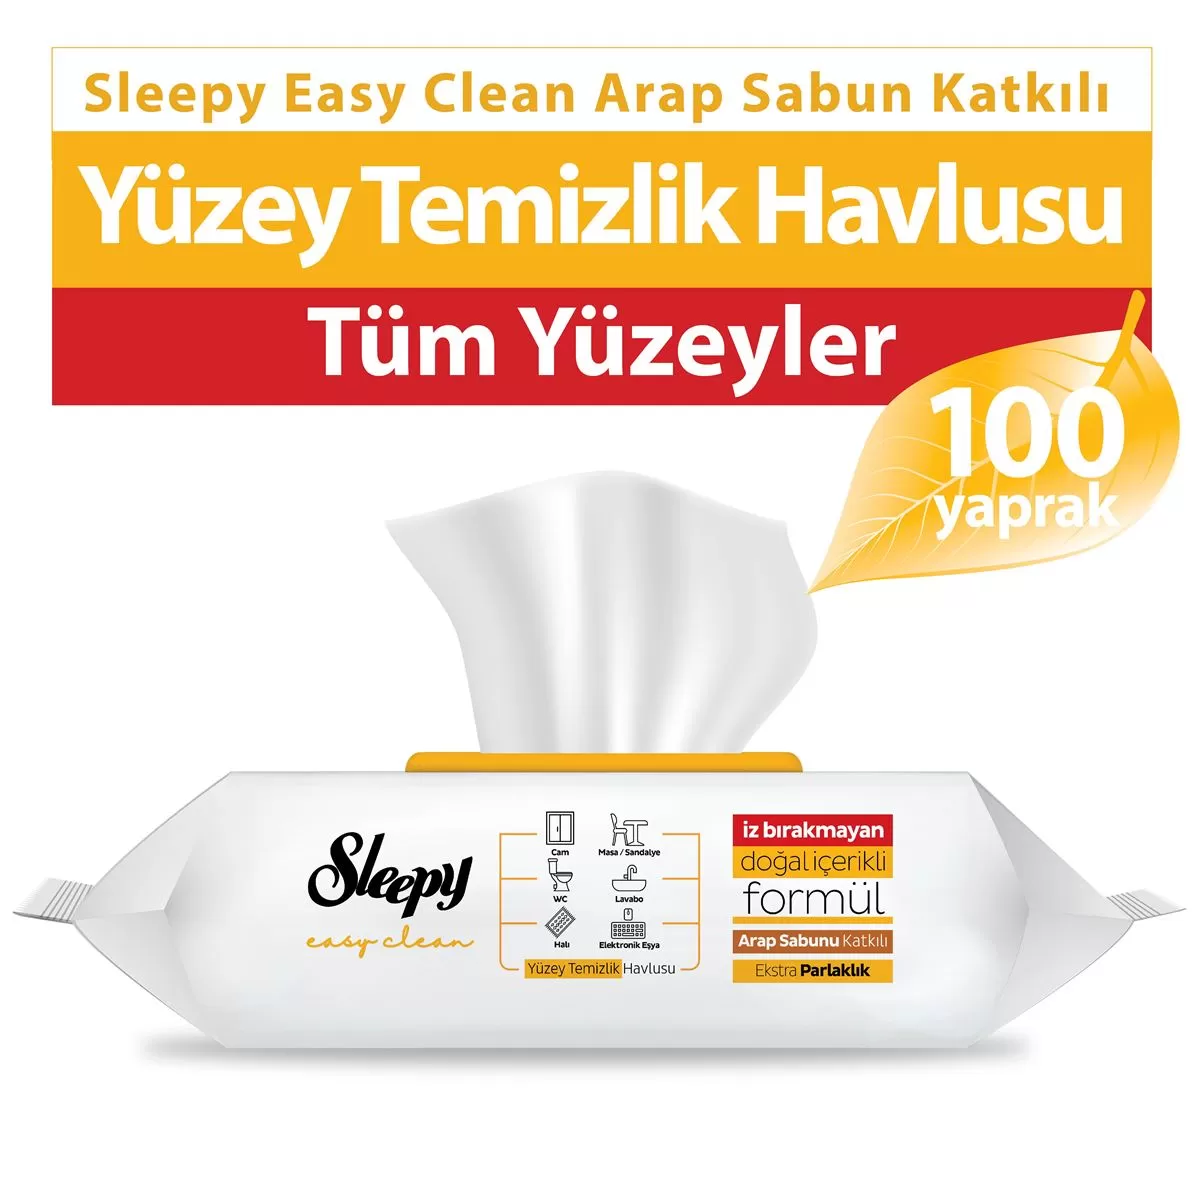 Sleepy Easy Clean Yüzey Temizlik Havlusu Arap Sabun Katkılı 100 Yaprak 5 Paket